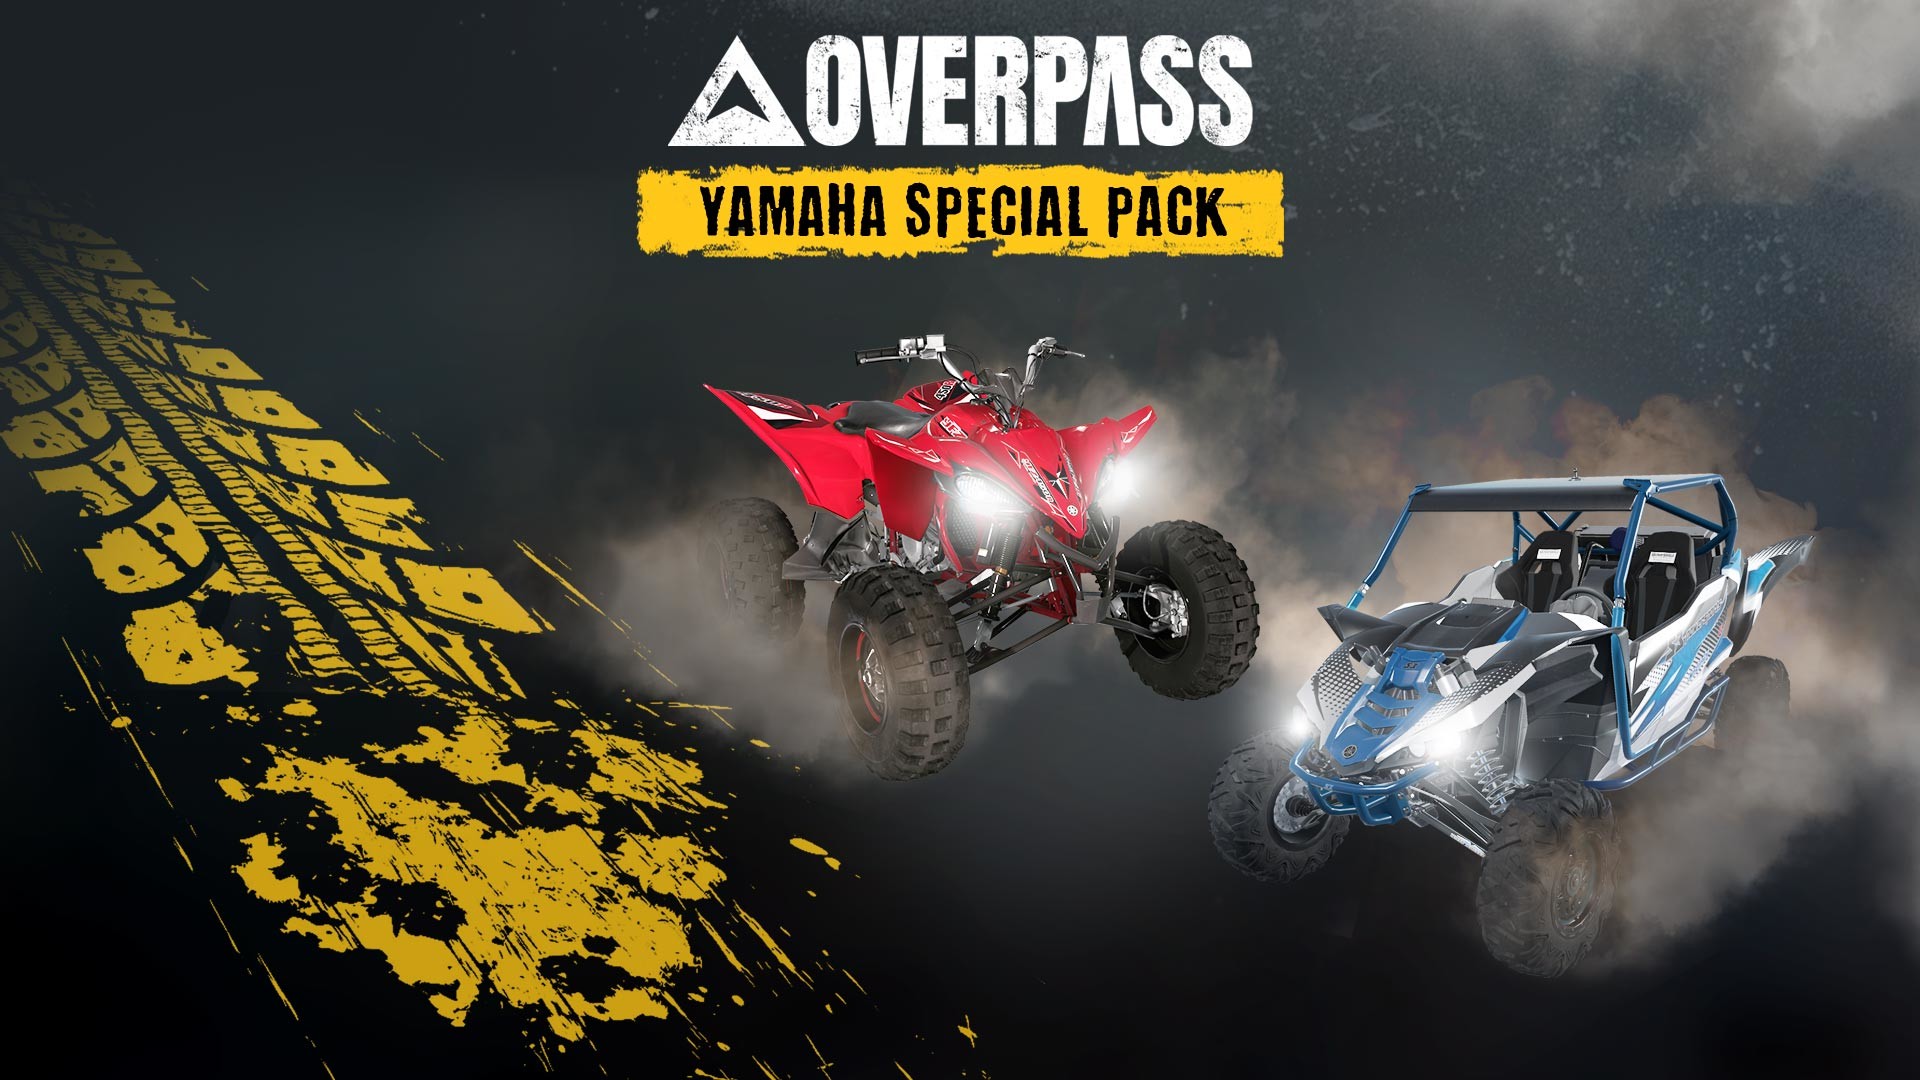 OVERPASS - Yamaha Special Pack DLC Steam CD Key 3.2 $